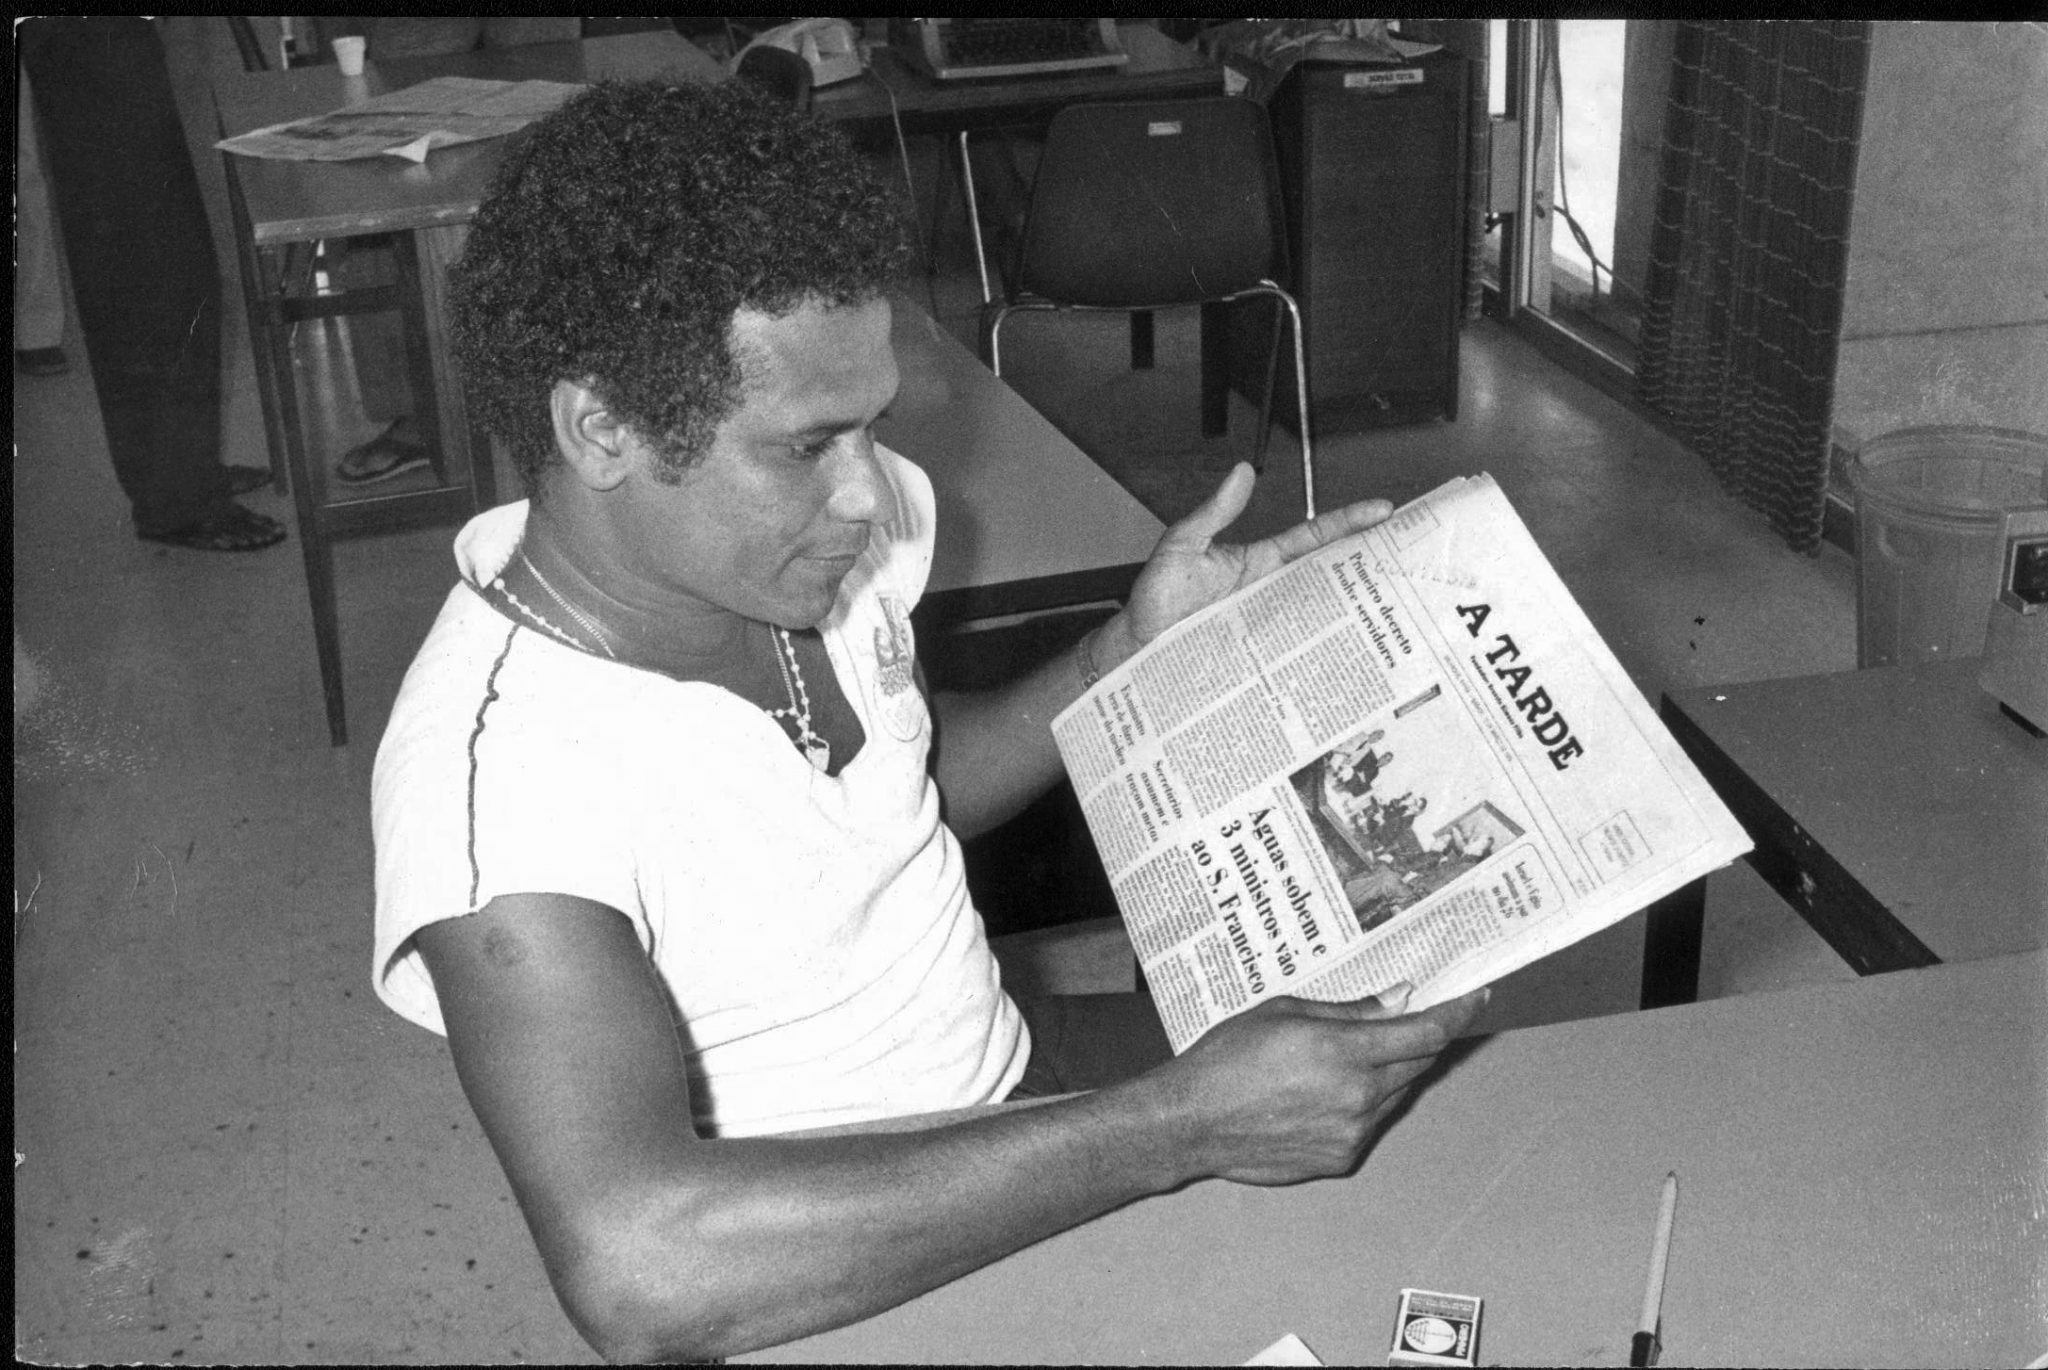 Registro da passagem de Ederaldo pela redação do jornal A TARDE em 1979, para perfil feito pelo jornalista Oleone Coelho Fontes. Crédito: Arquivo A Tarde.